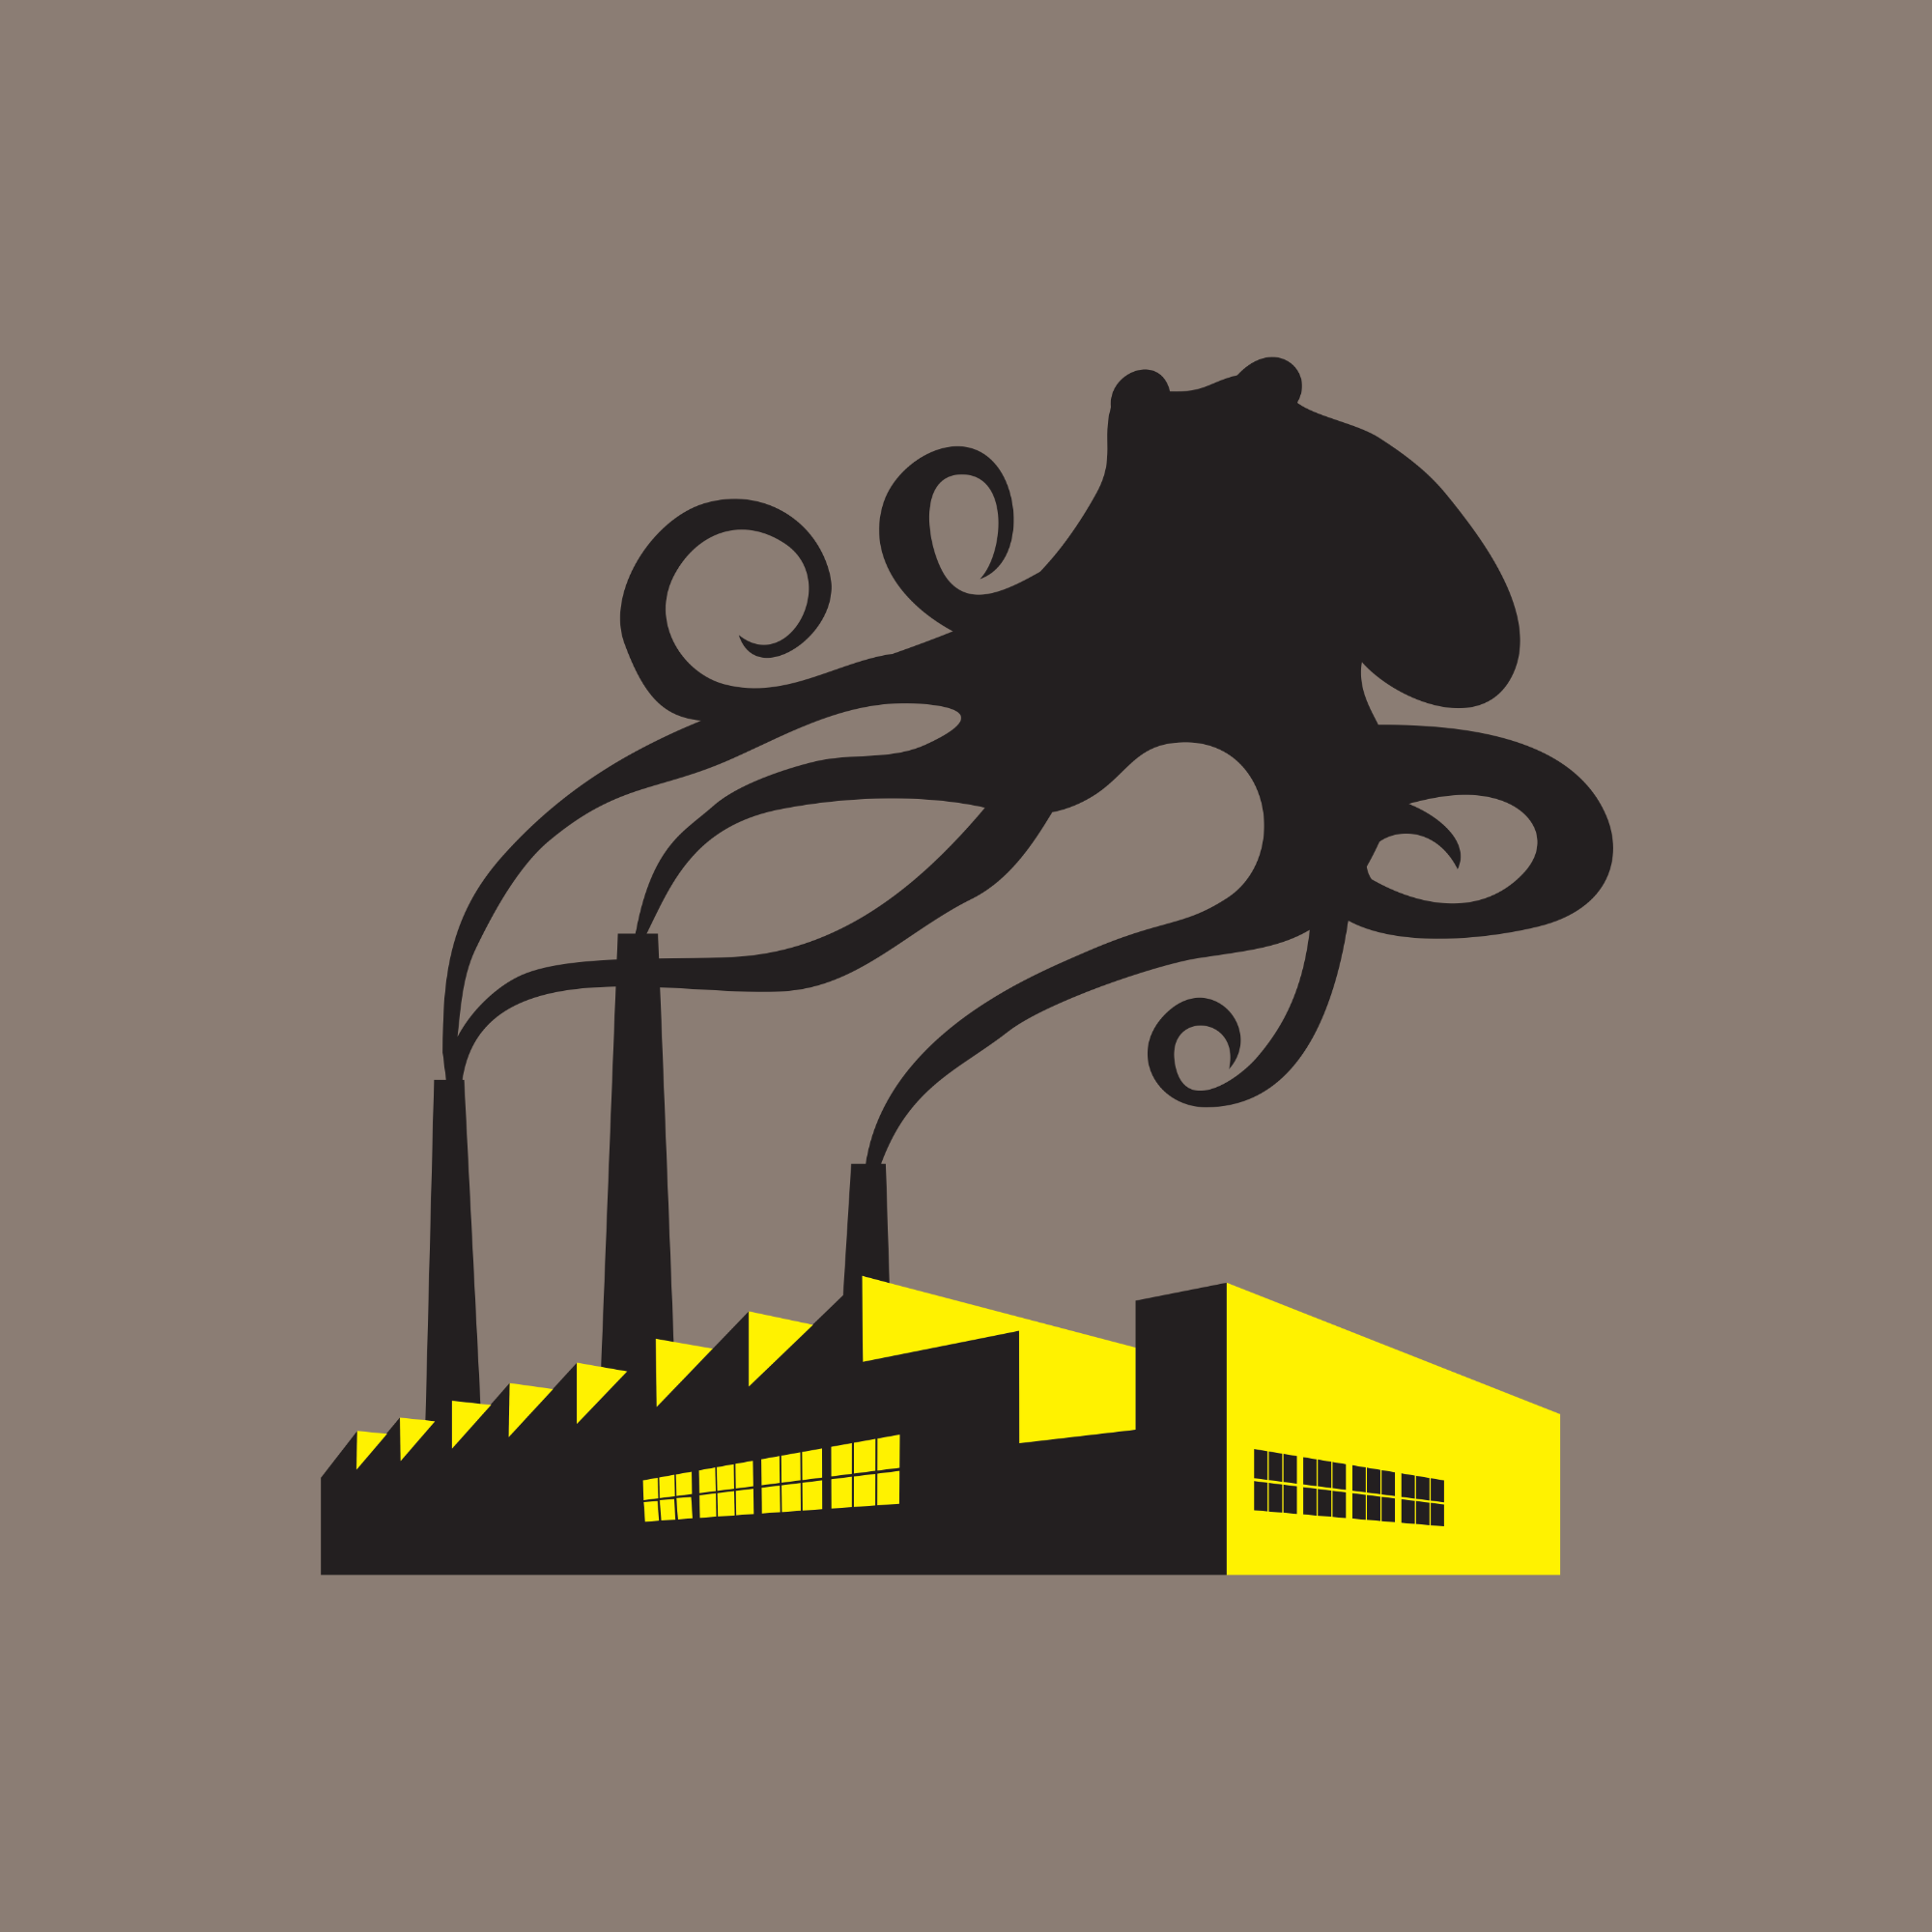 Smokin’ Factory